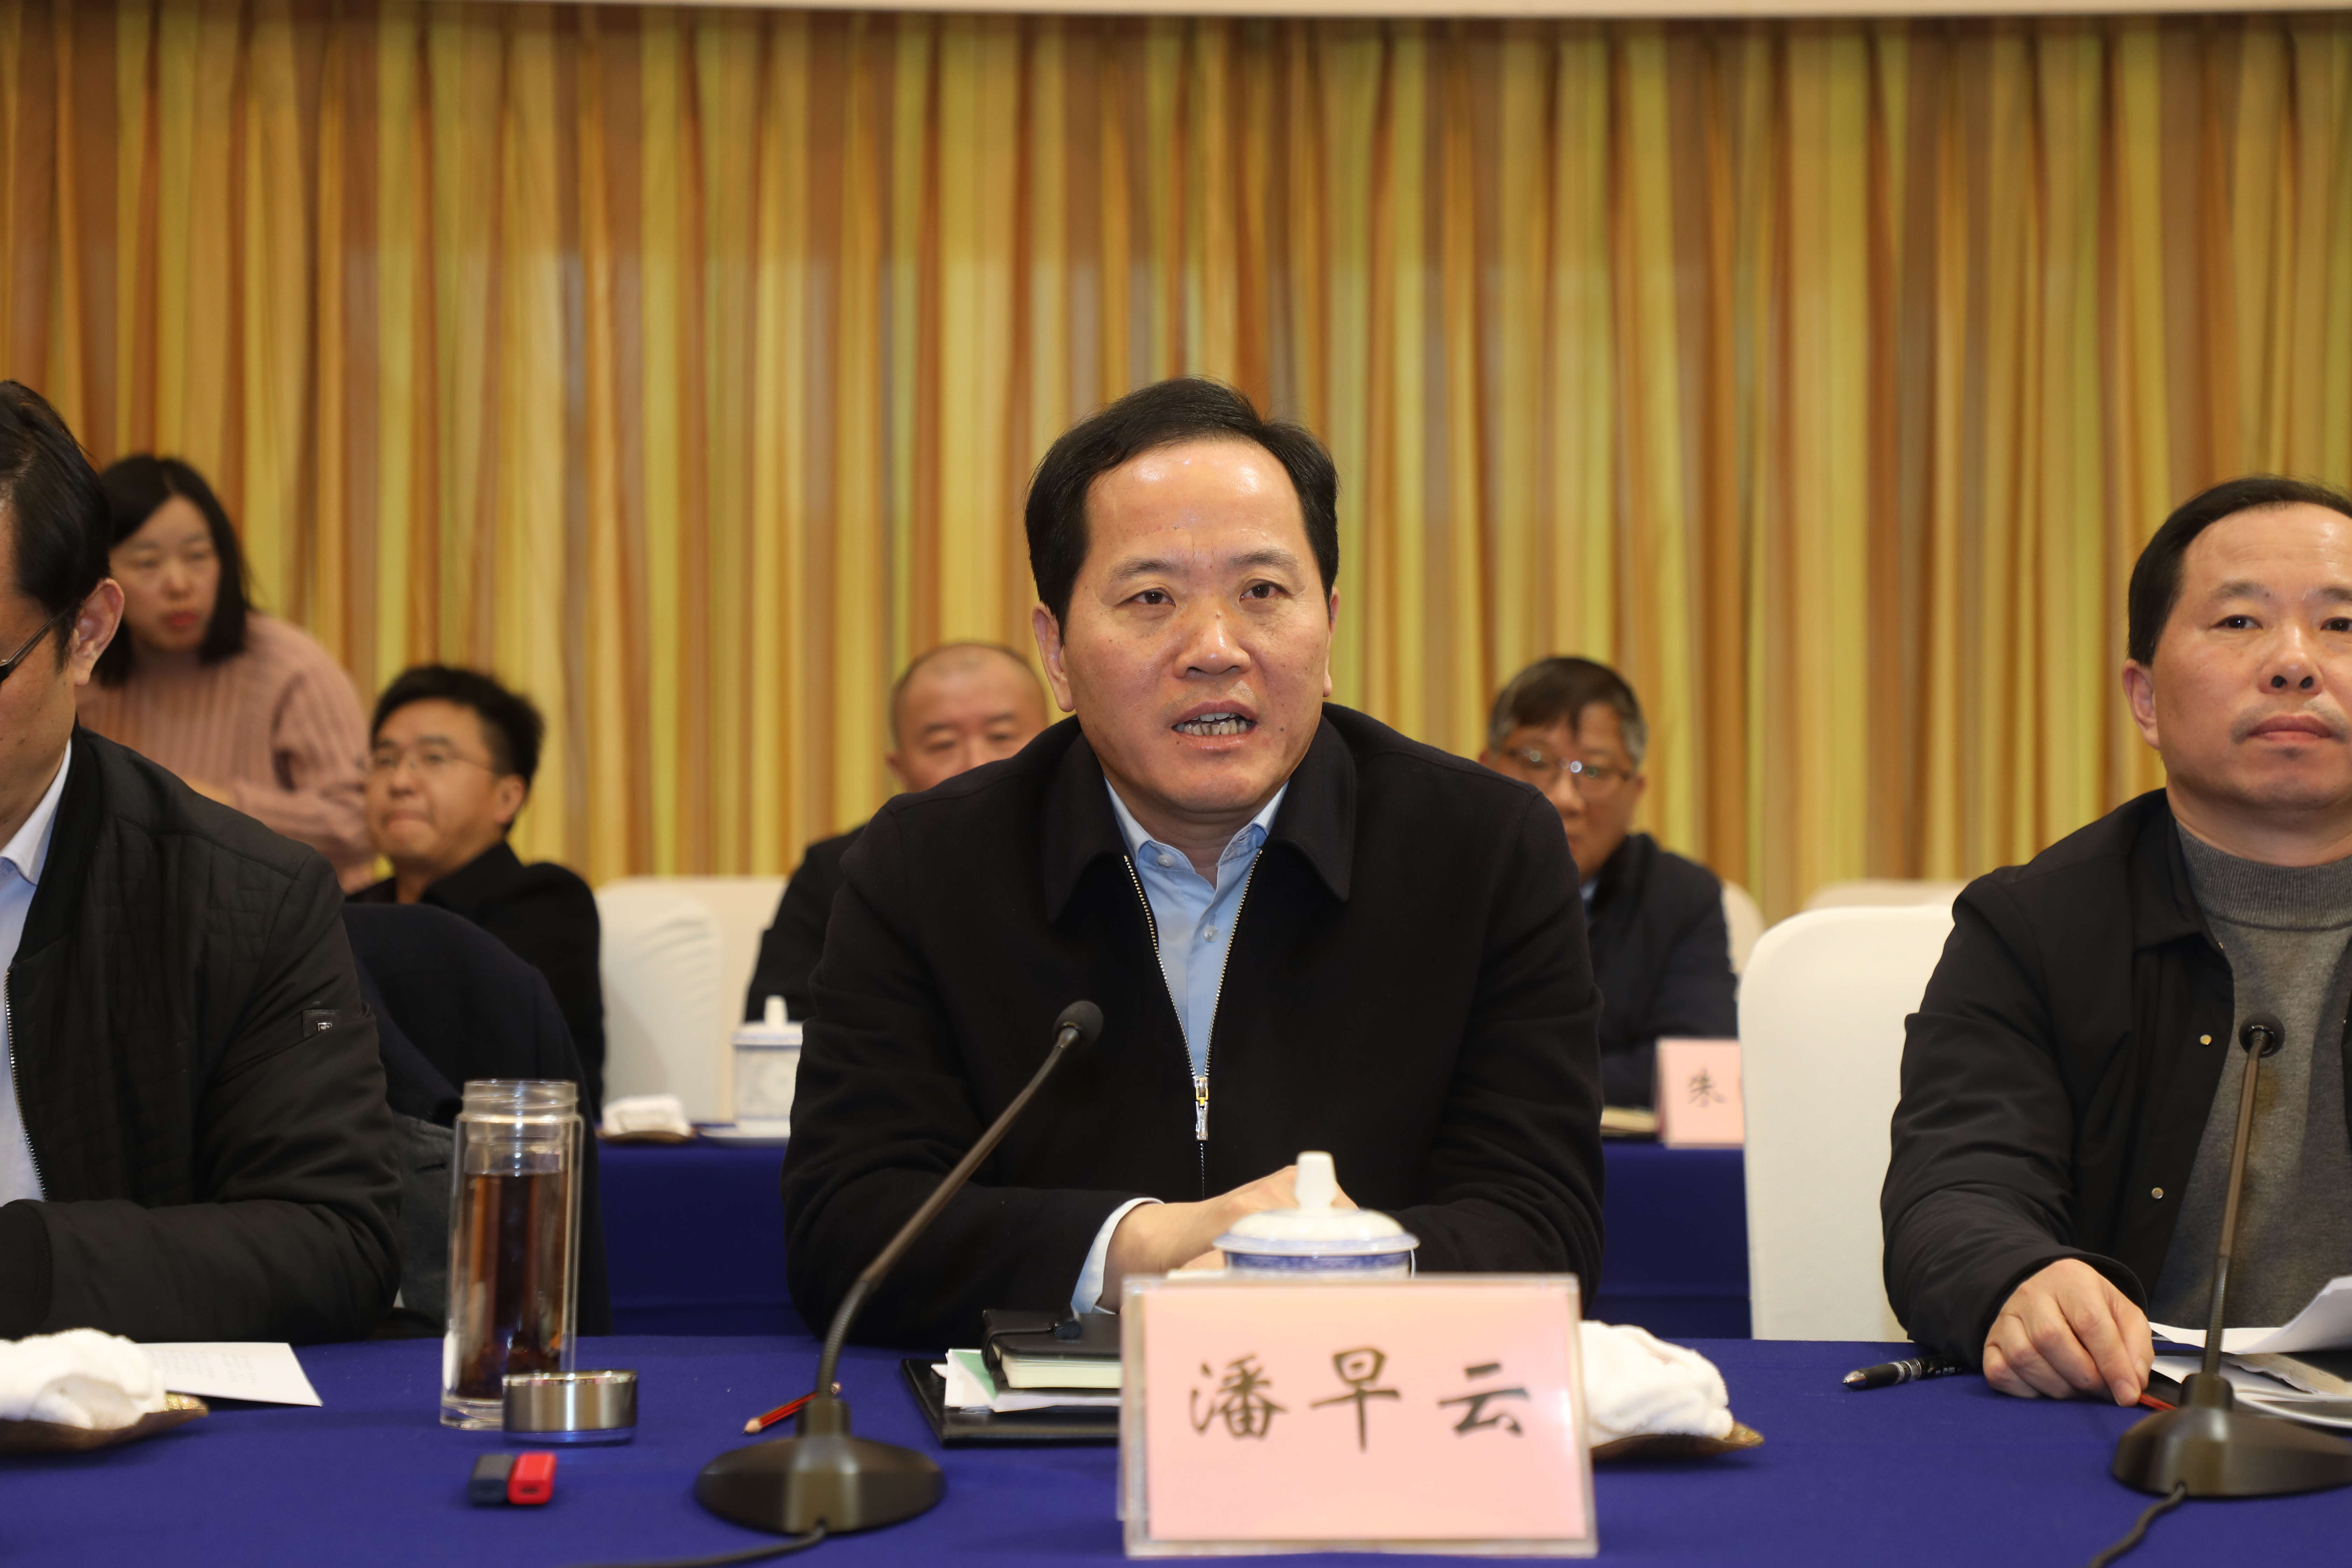 镇江市副市长潘早云对于专家领导提出的建议表示诚挚的感谢,同时希望